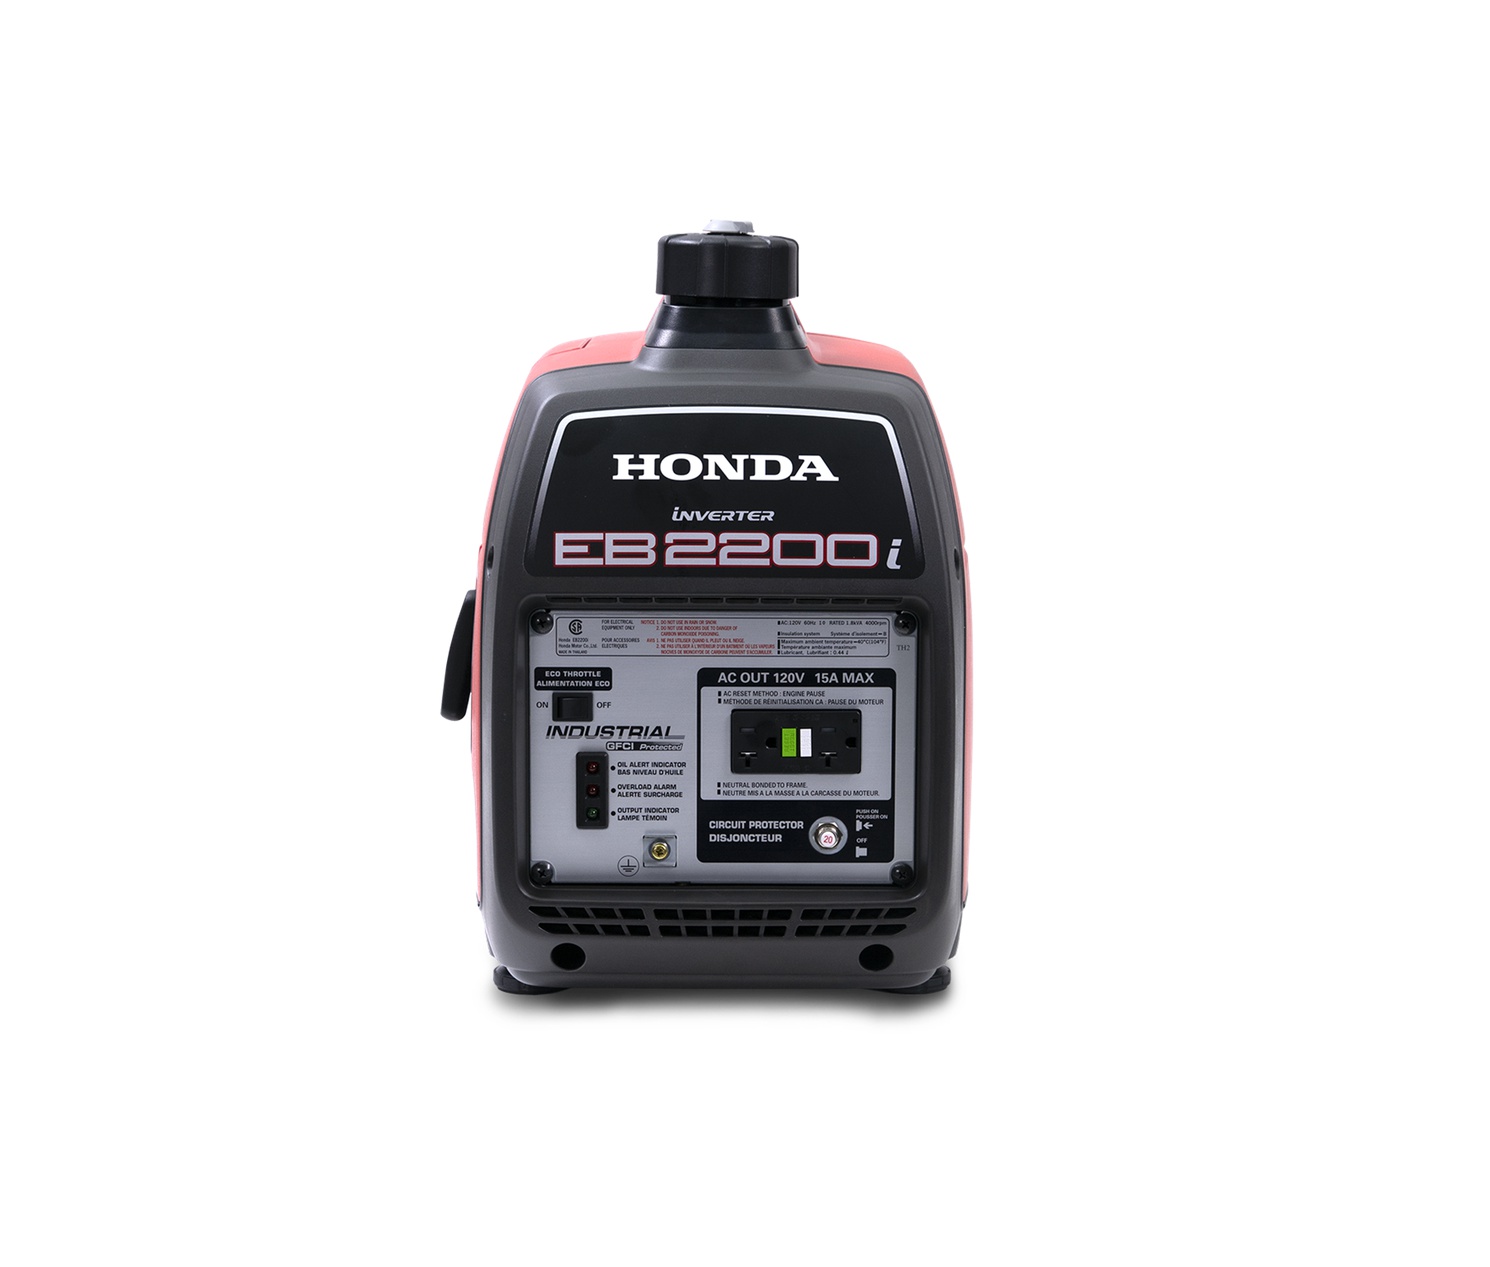  Honda Generators EB2200iTC